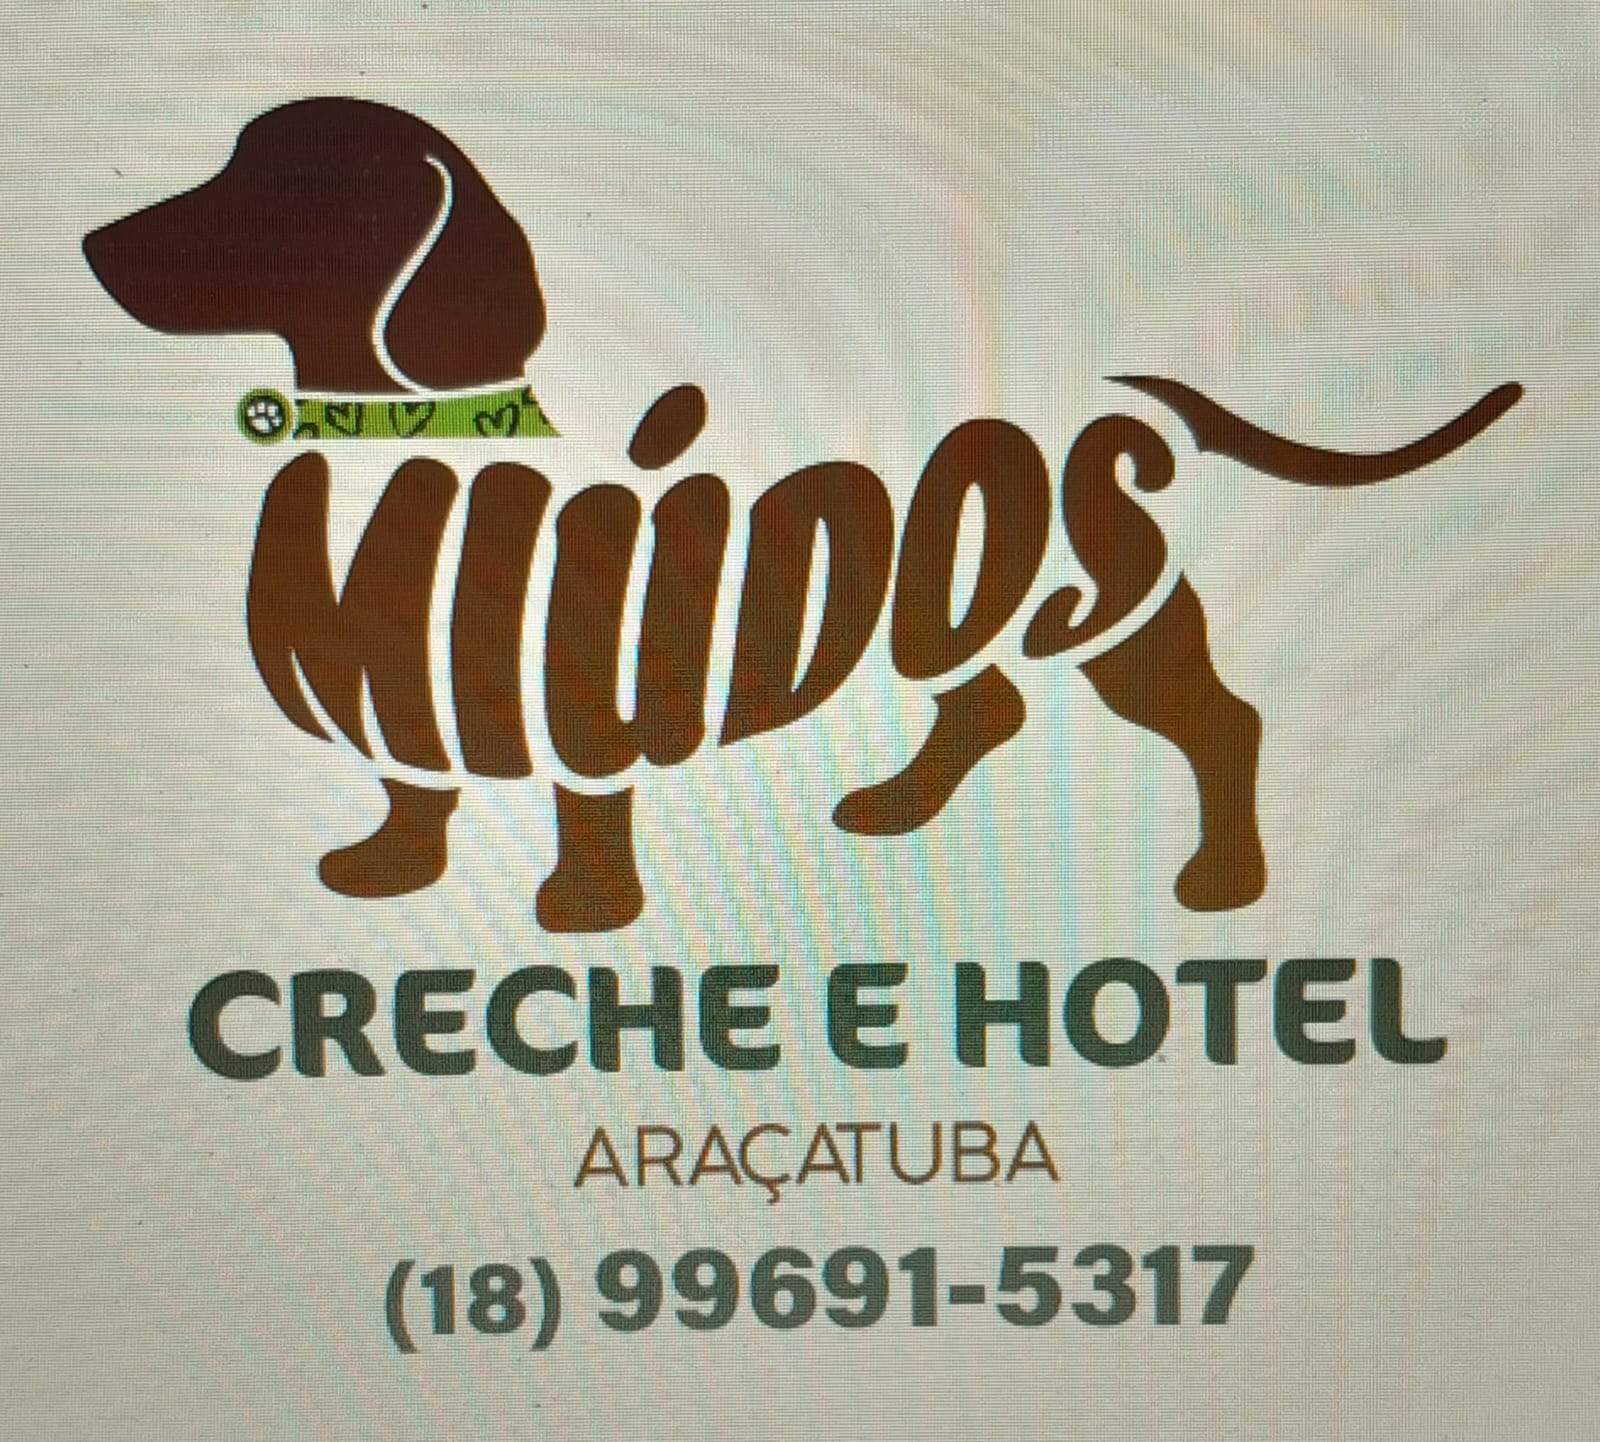 CRECHE E HOTEL MIUDOS